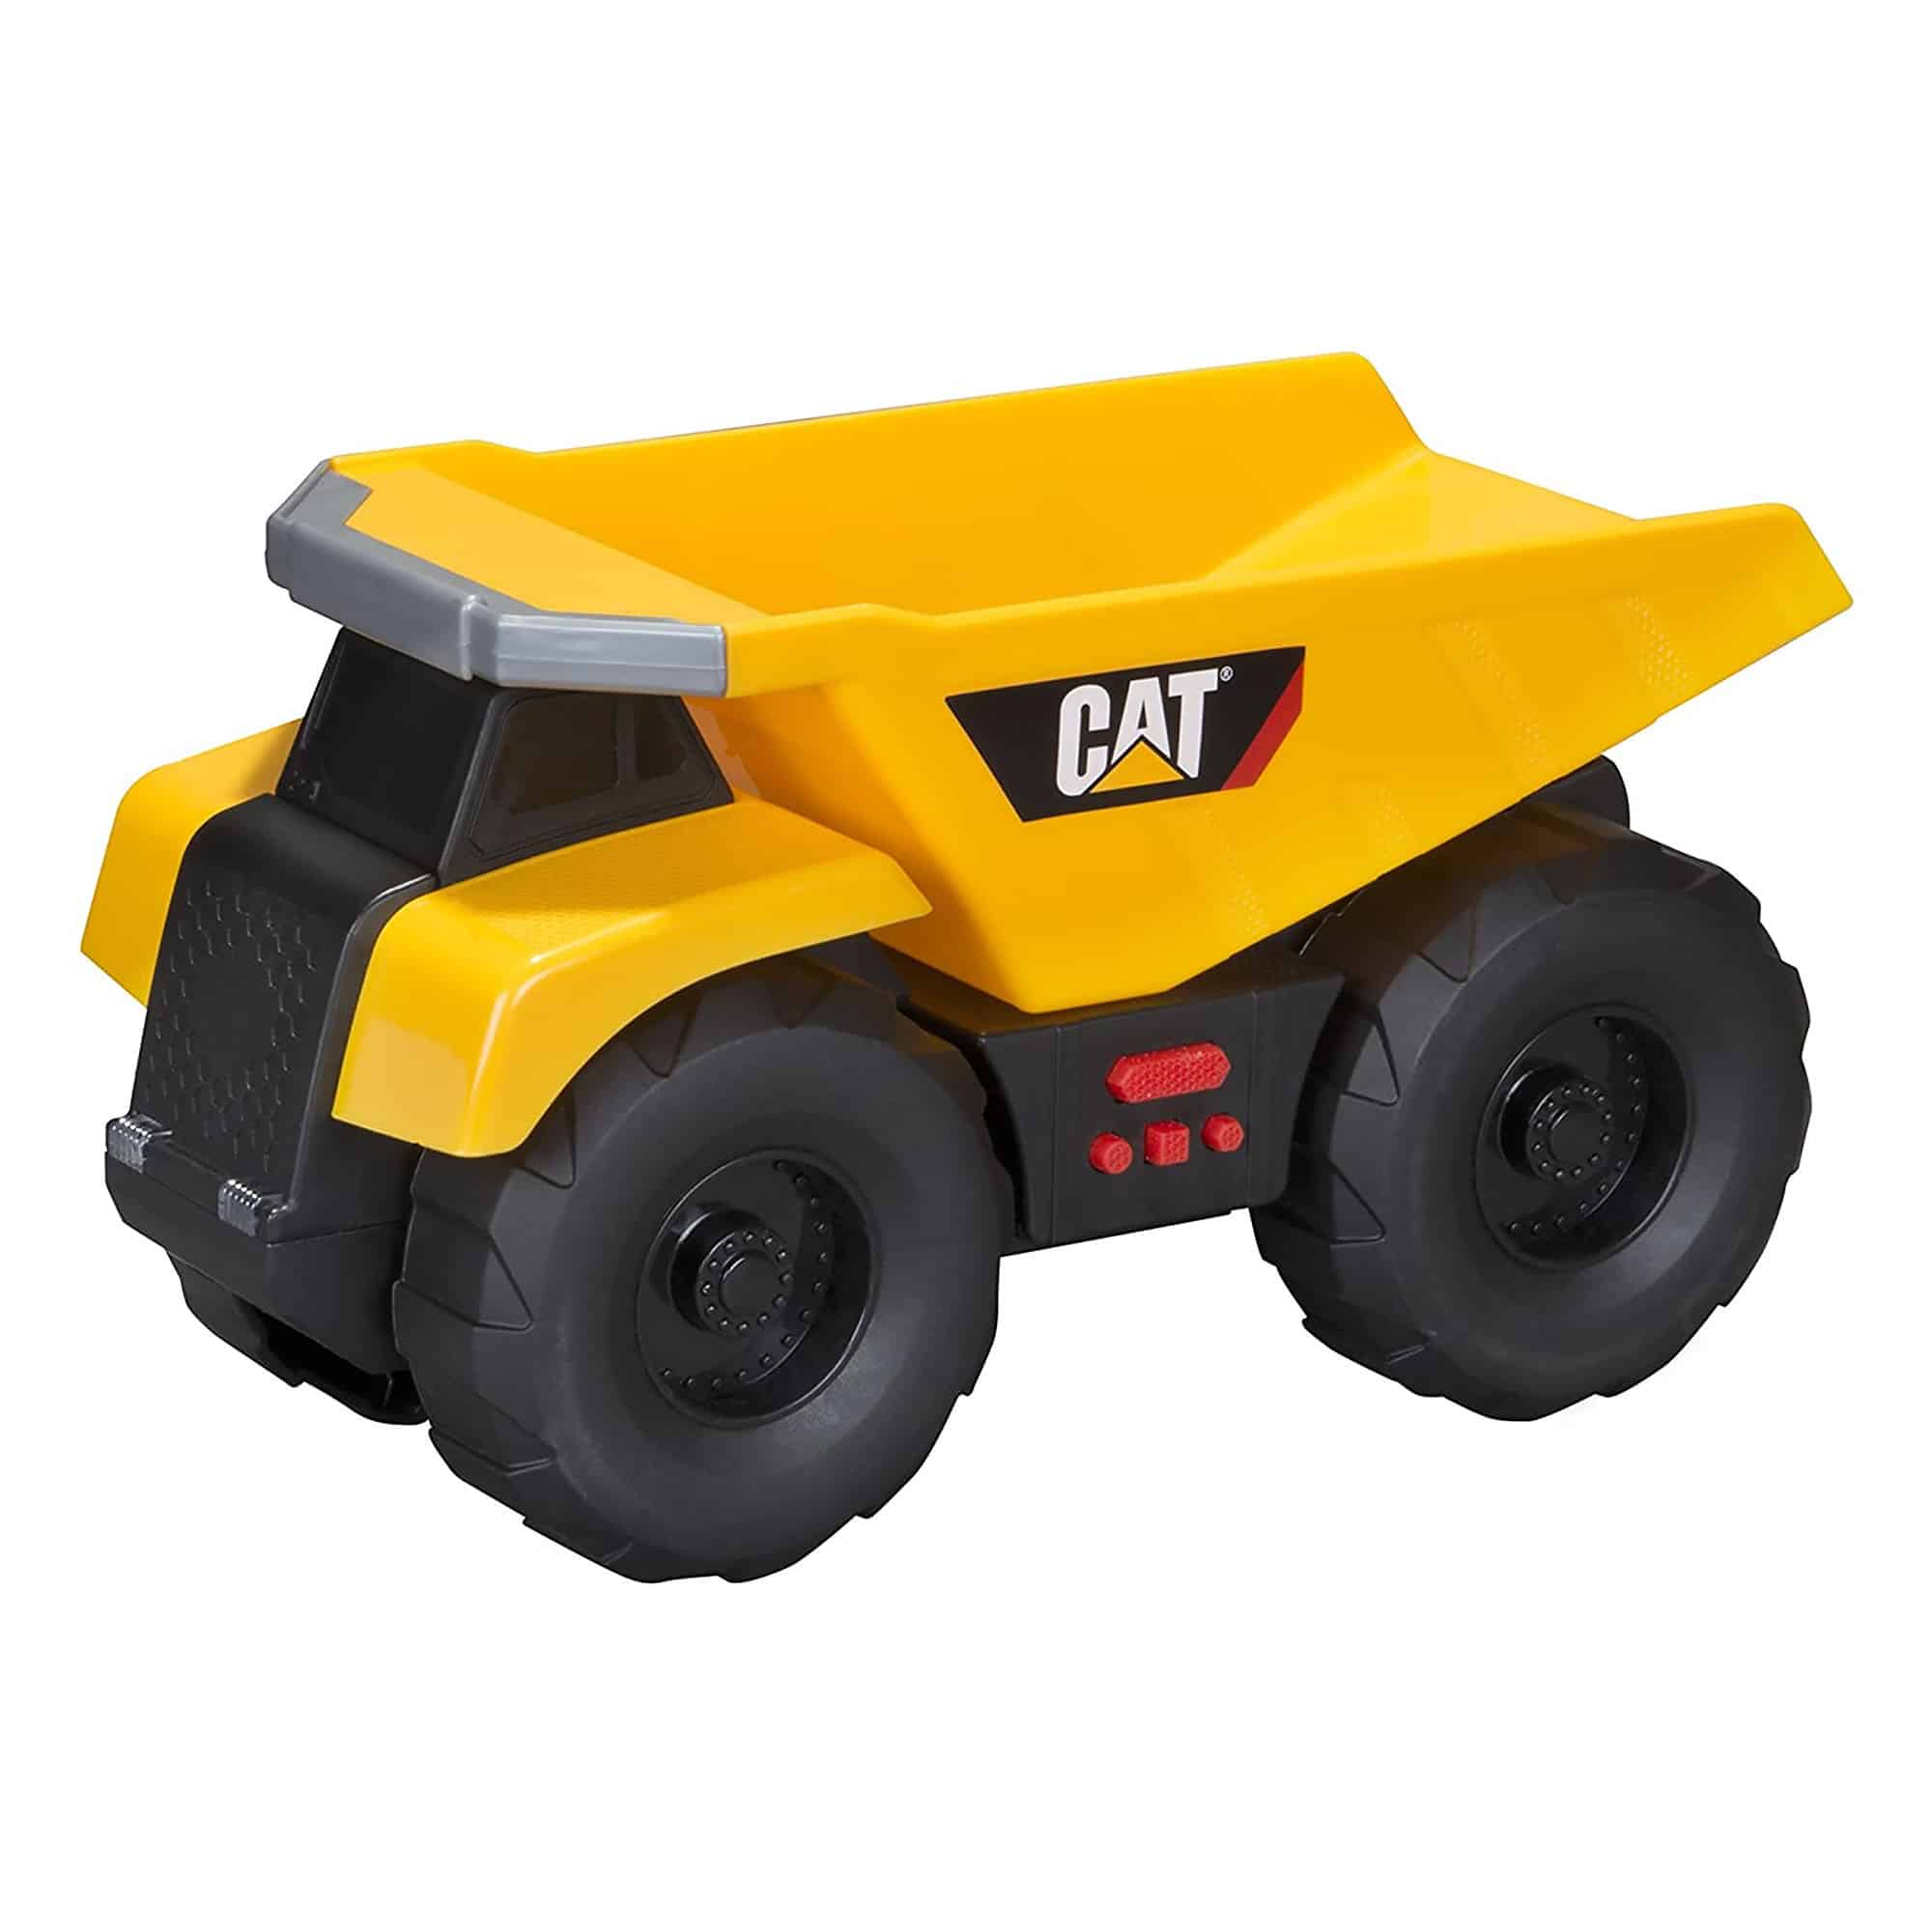 CAT - Big Builder - Dump Truck